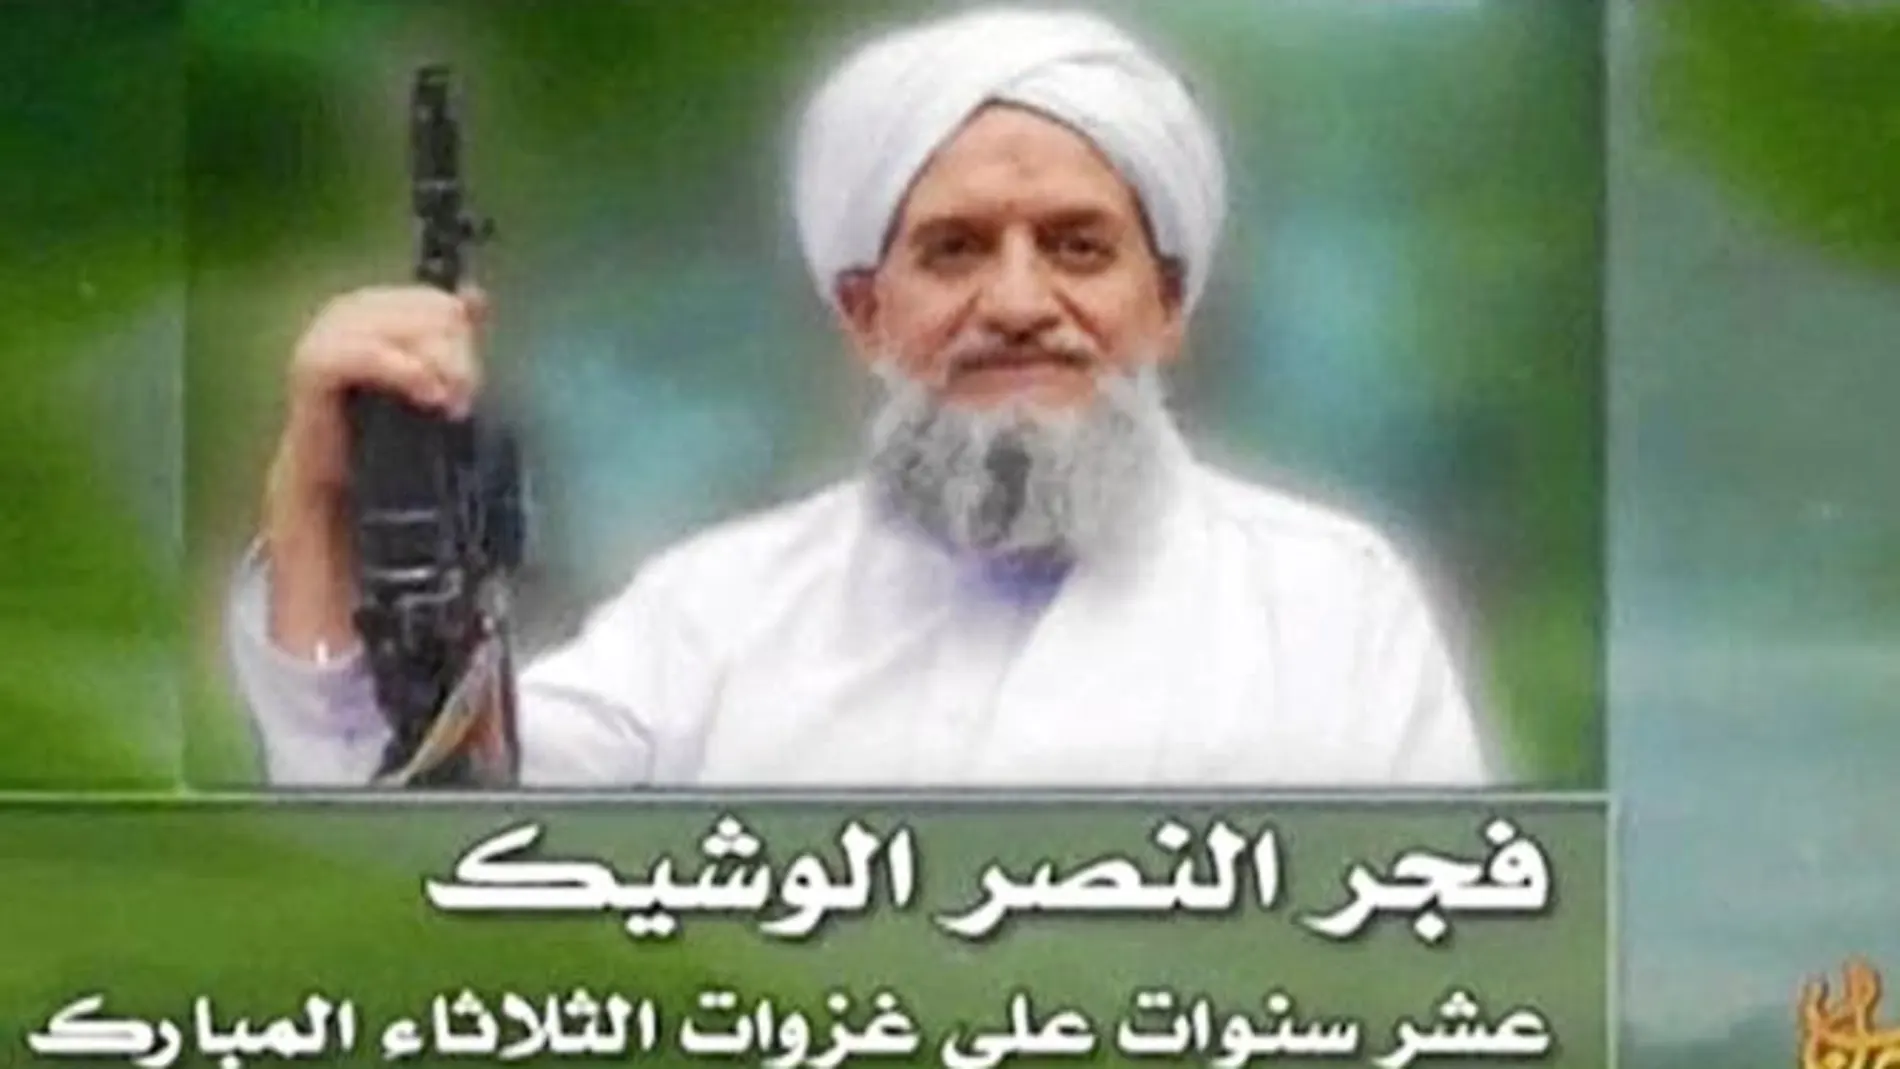 El nuevo jefe de Al Qaeda tal y como se presenta en su primer vídeo